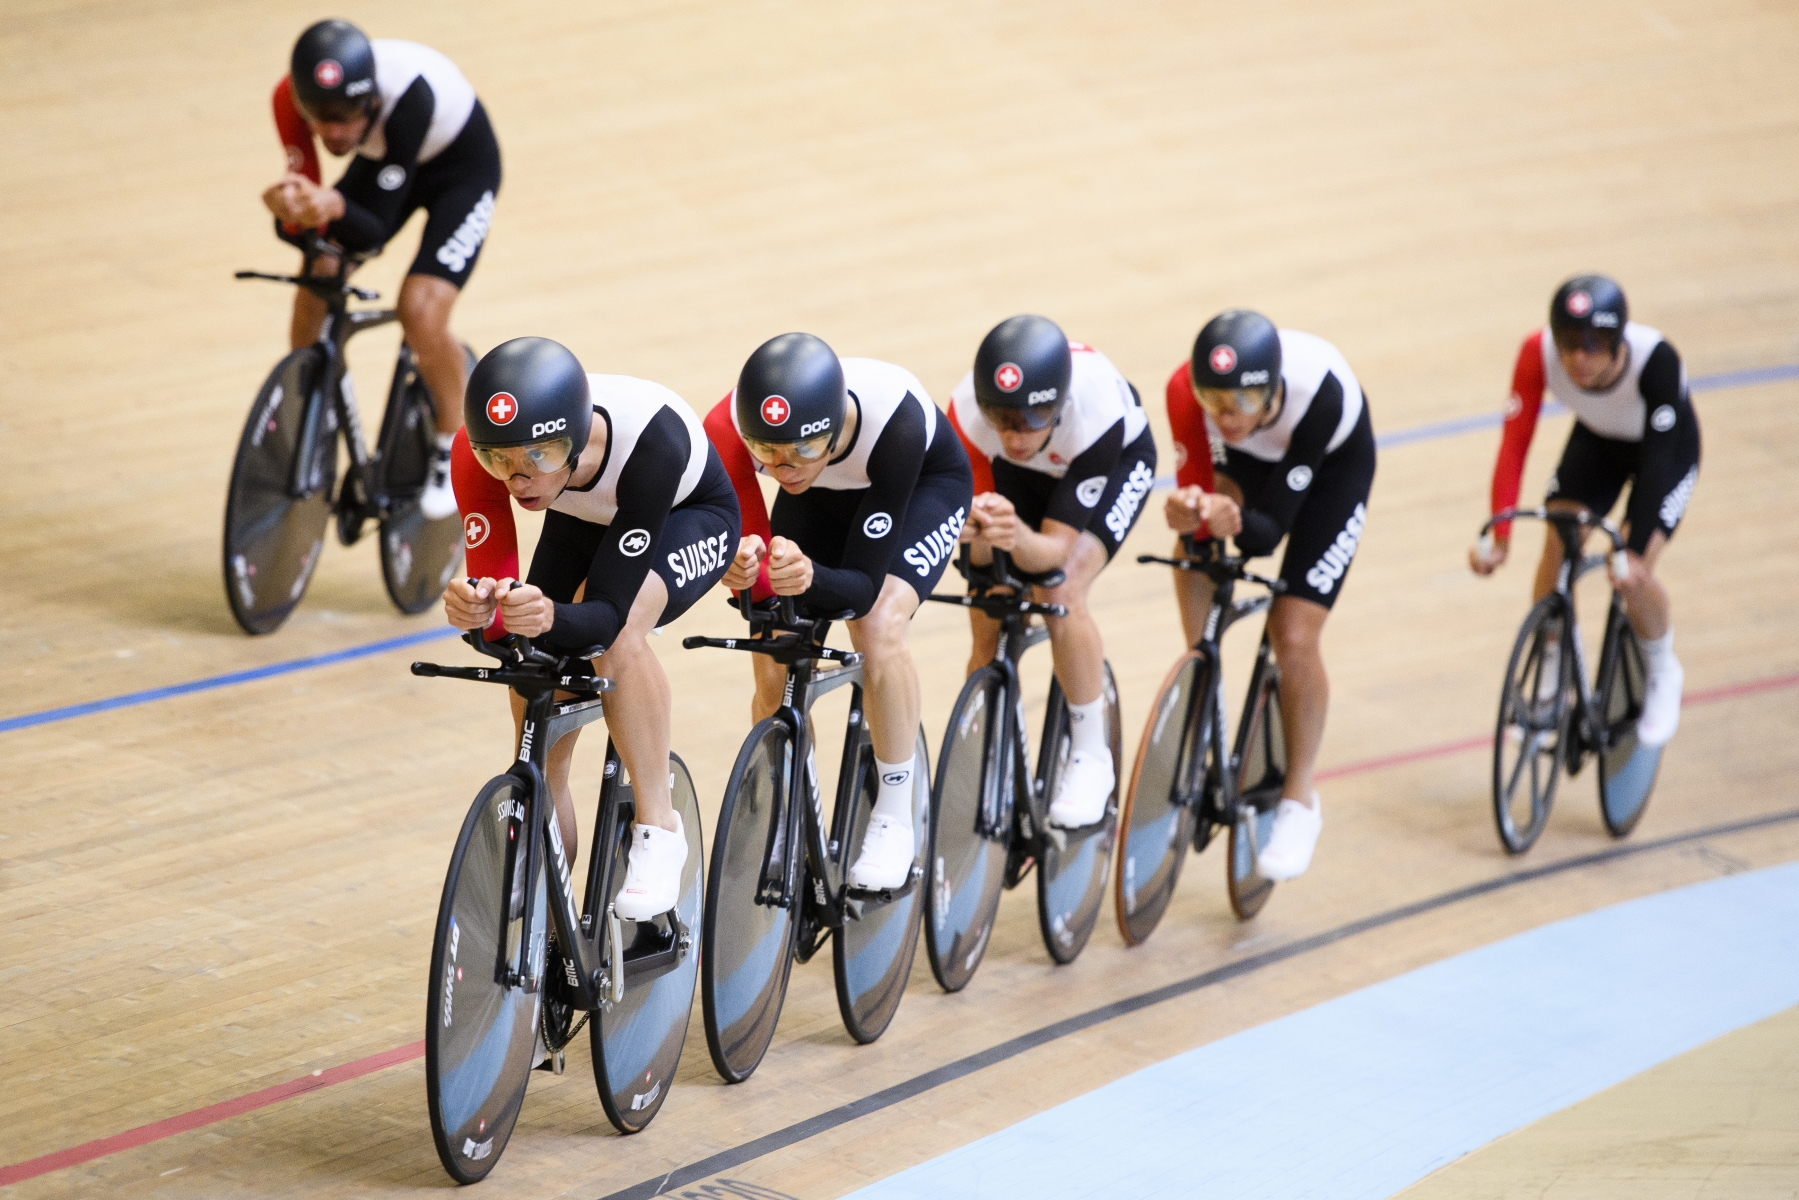 Das Schweizer Bahnrad-Team fuer die Olympischen Spiele in Rio 2016 trainiert anlaesslich des Medientreffens im Velodrome Grenchen, am Donnerstag, 28. Juli 2016, in Grenchen. (KEYSTONE/Manuel Lopez)